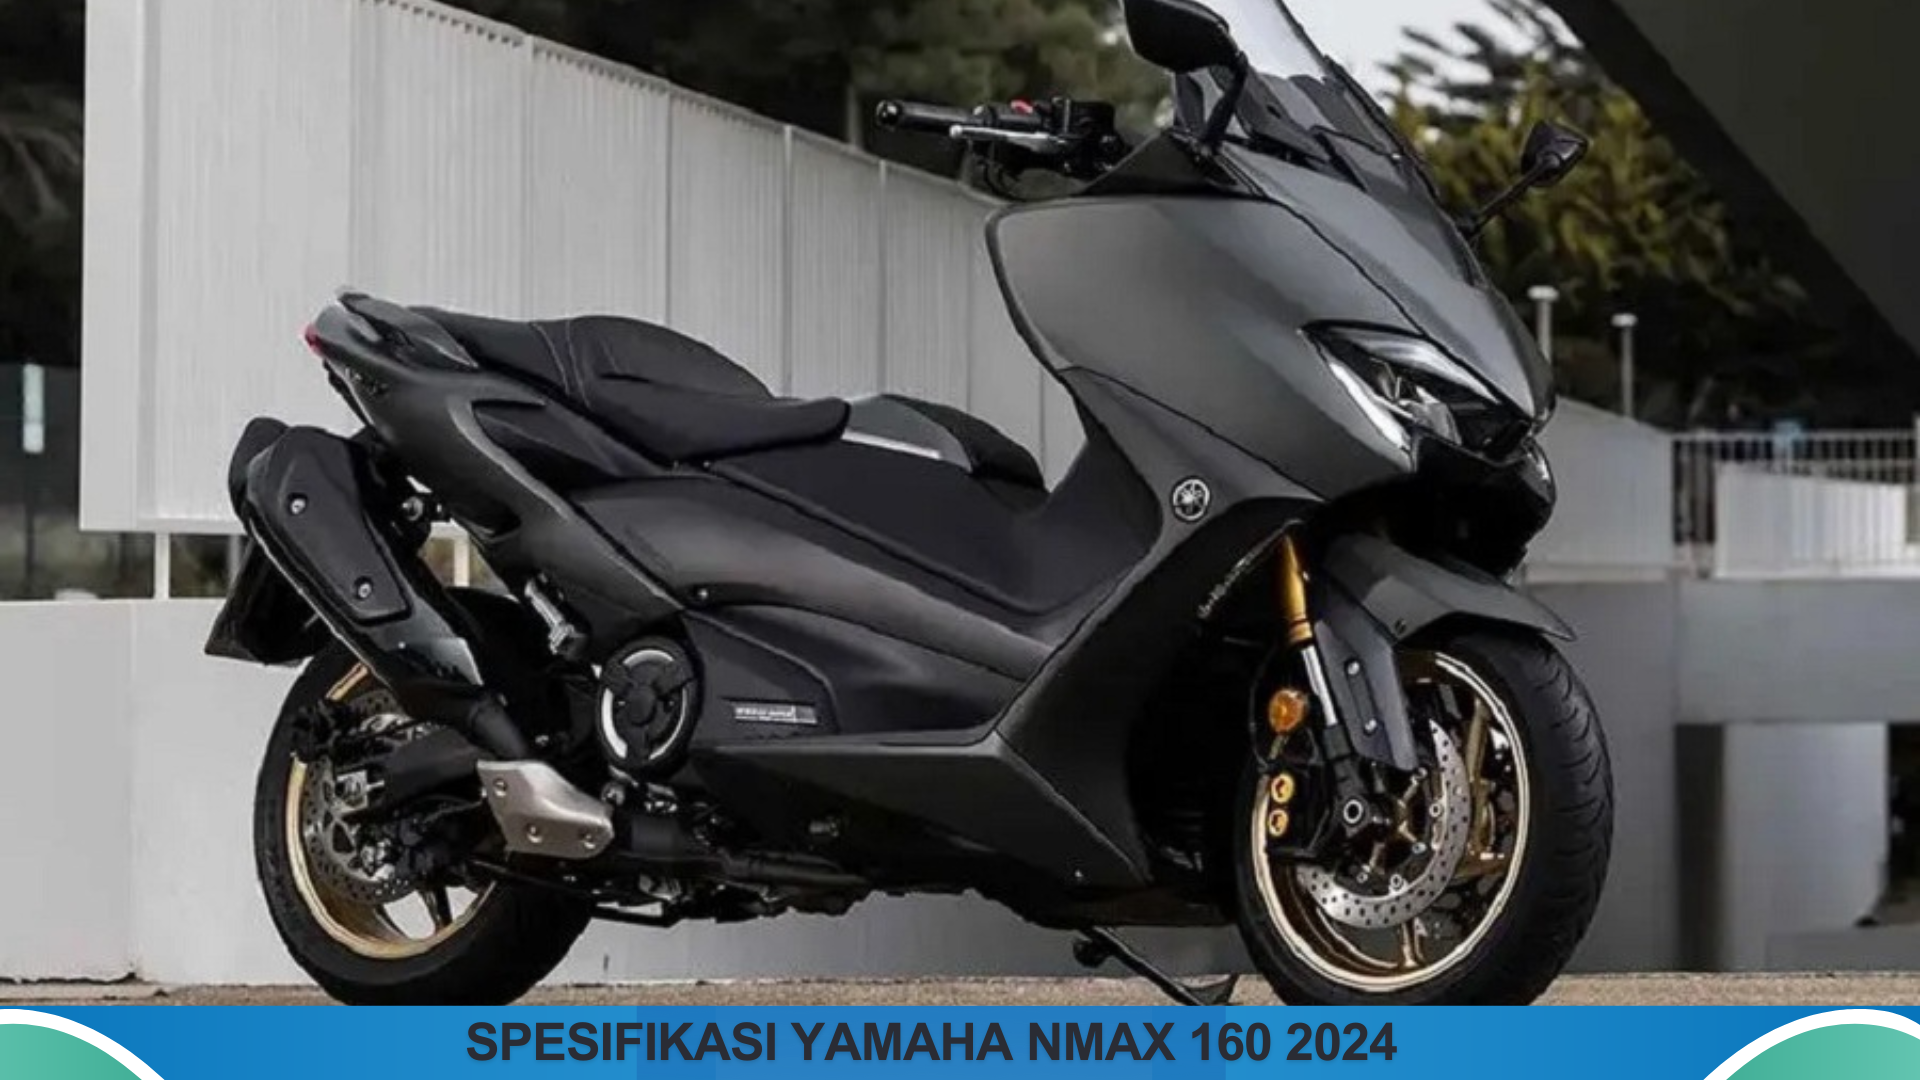 Spesifikasi Yamaha NMAX 160 2024 Kombinasi Desain Menawan, Fitur Canggih dan Performa yang Tangguh